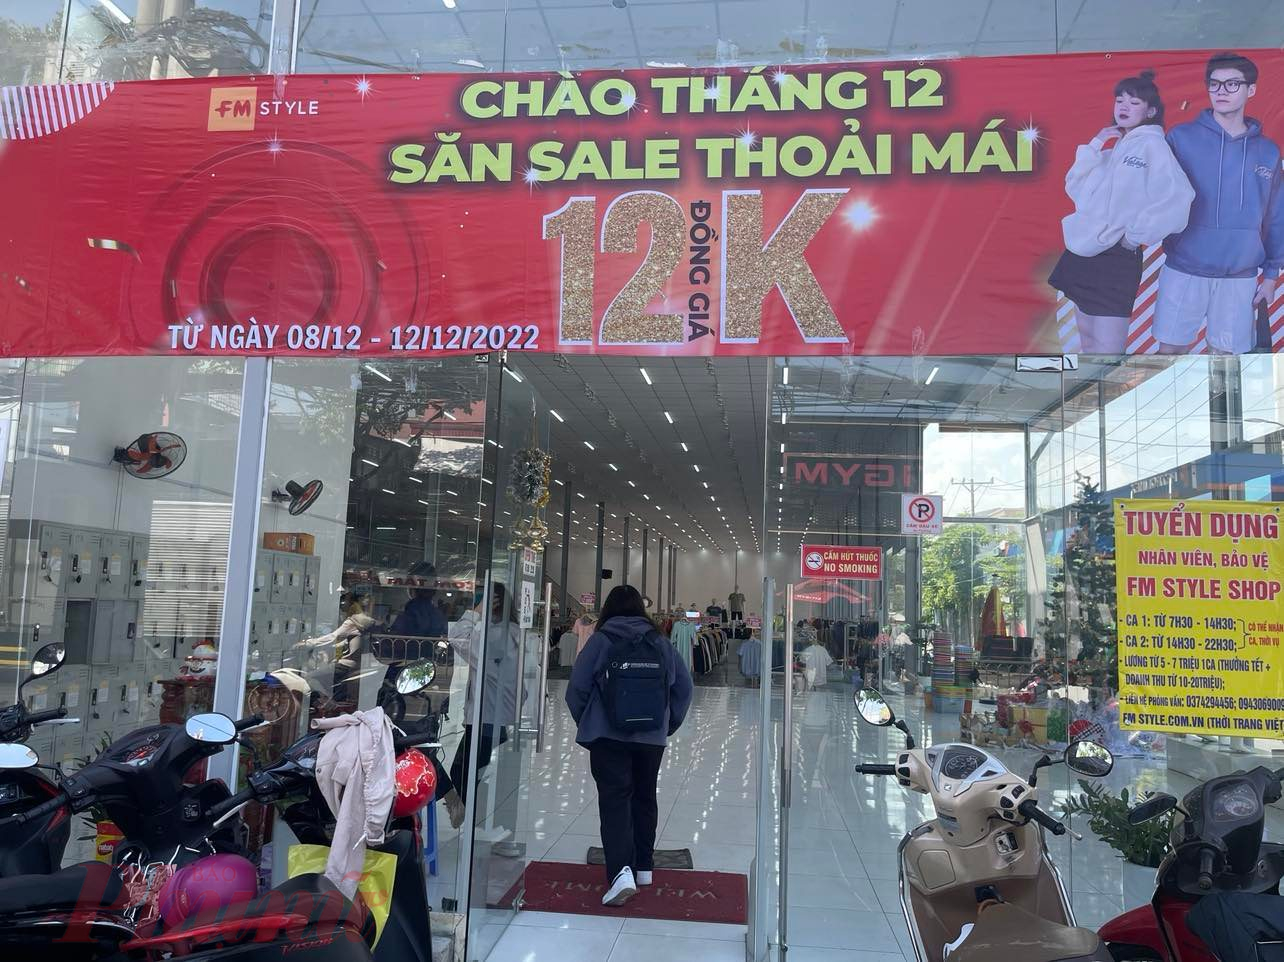 Một cửa hàng thời trang trên đường Quang Trung, quận Gò Vấp gây chú ý bởi băng rôn  đồng giá 12k (12.000 đồng).